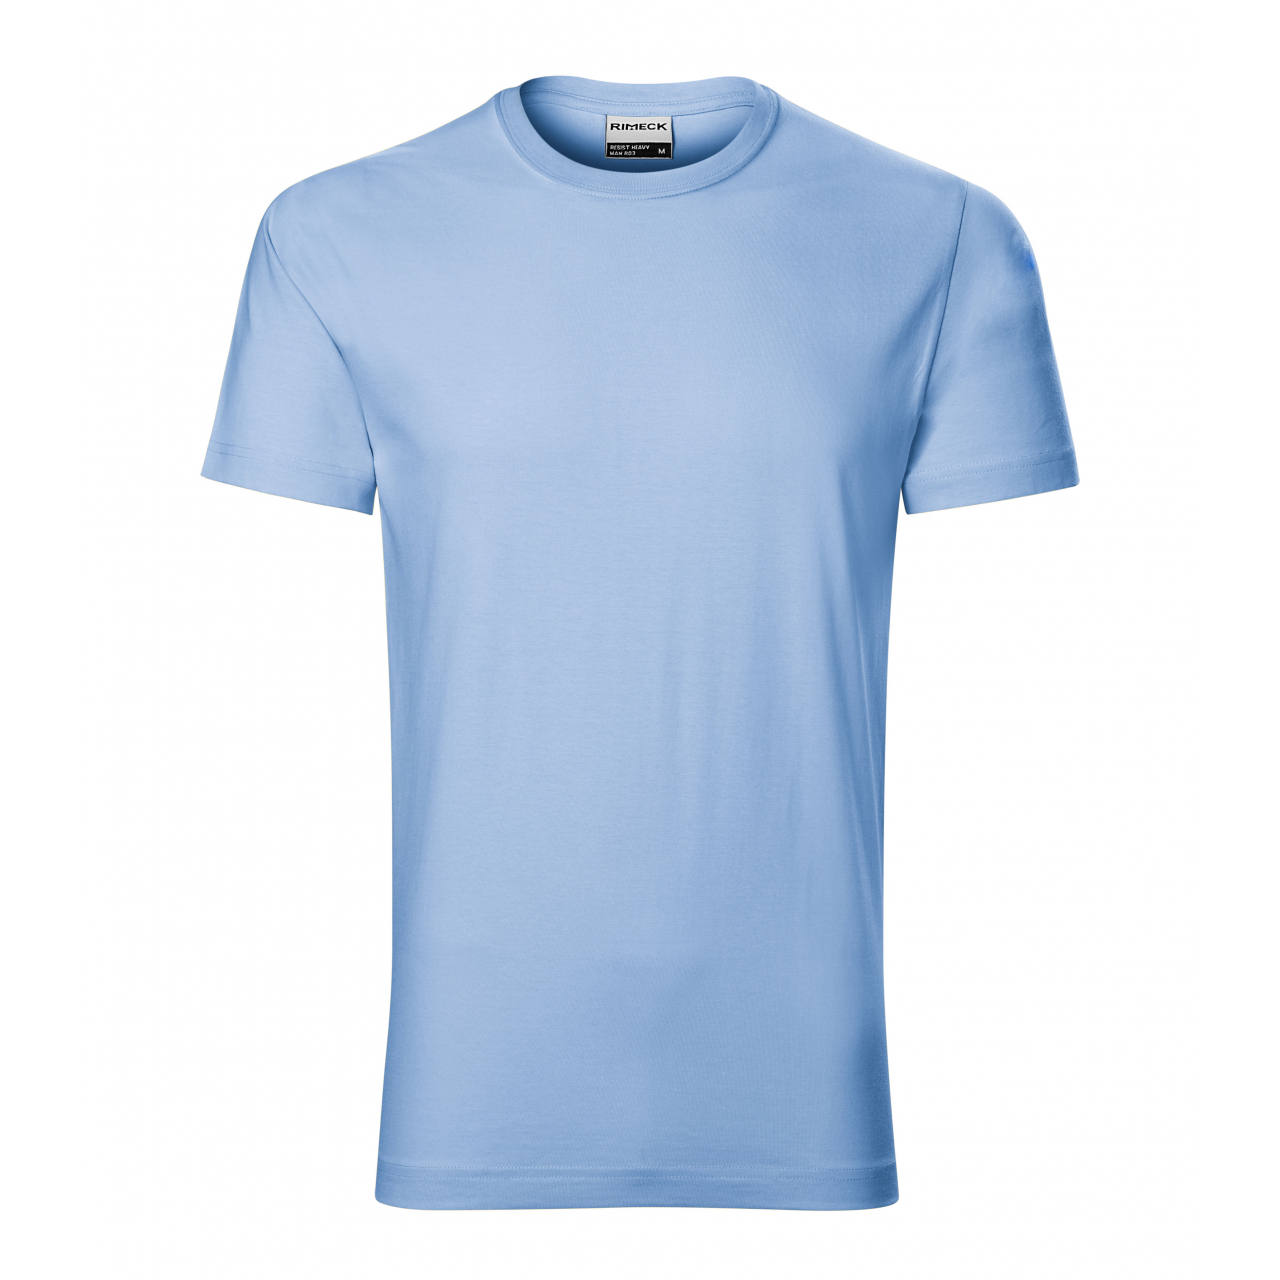 Tričko pánské Rimeck Resist - světle modré, XL